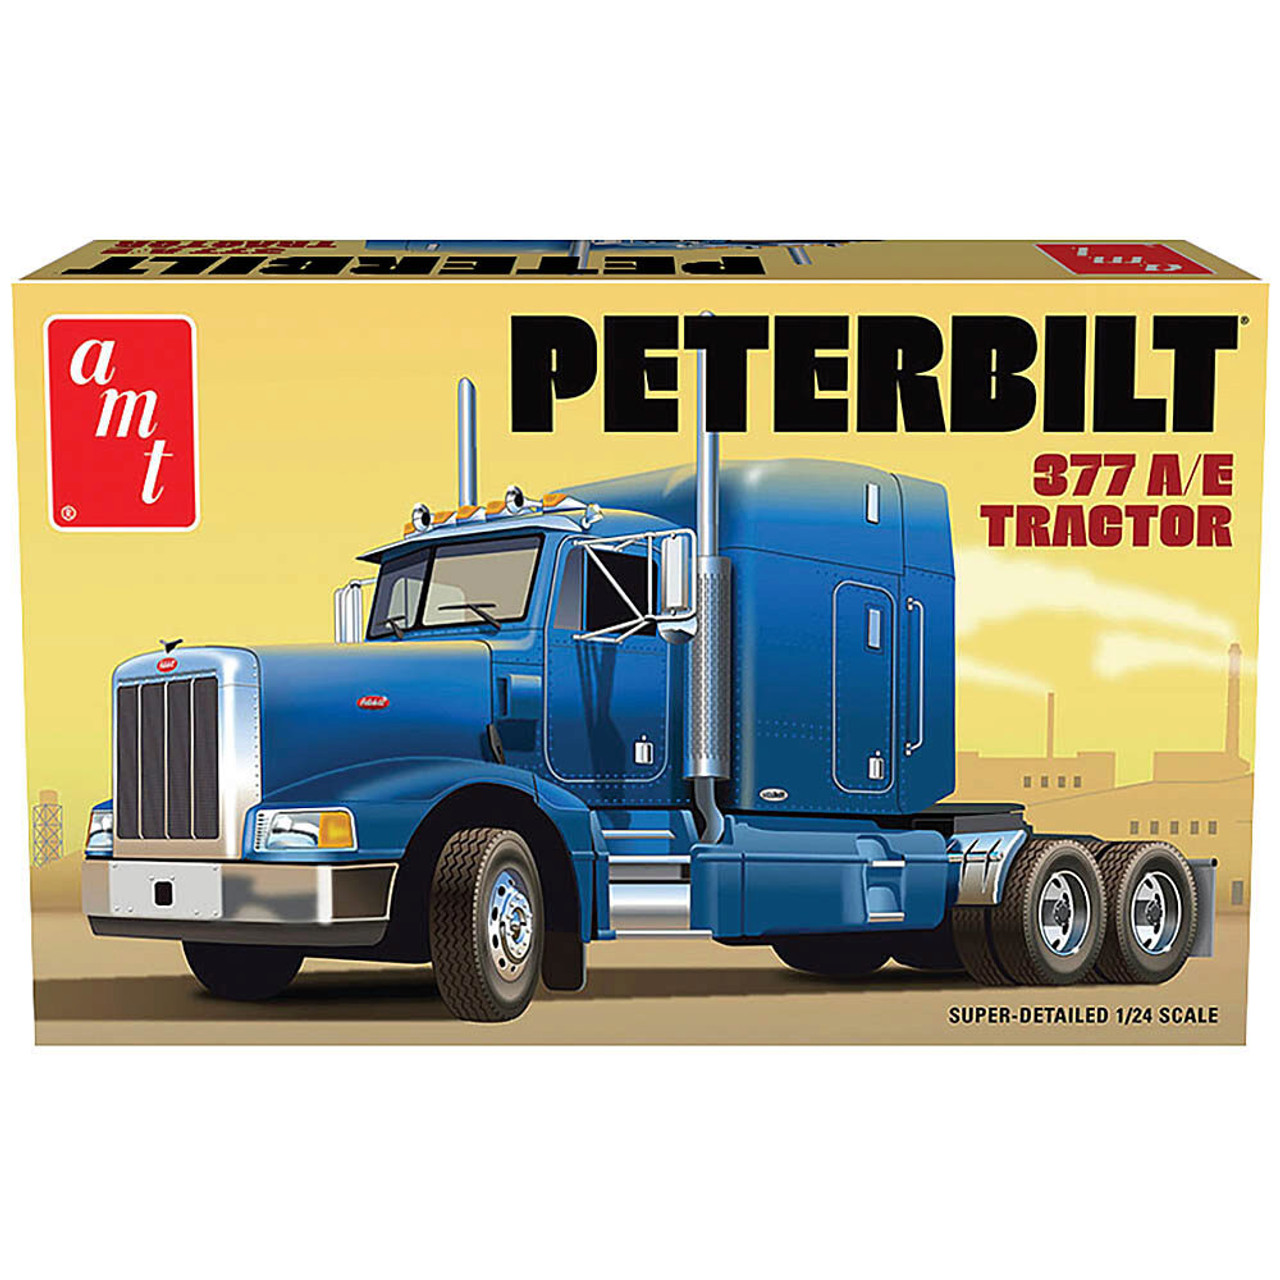 Classic Peterbilt 377 A/E Tractor 1/24 Kit AMT1337/08